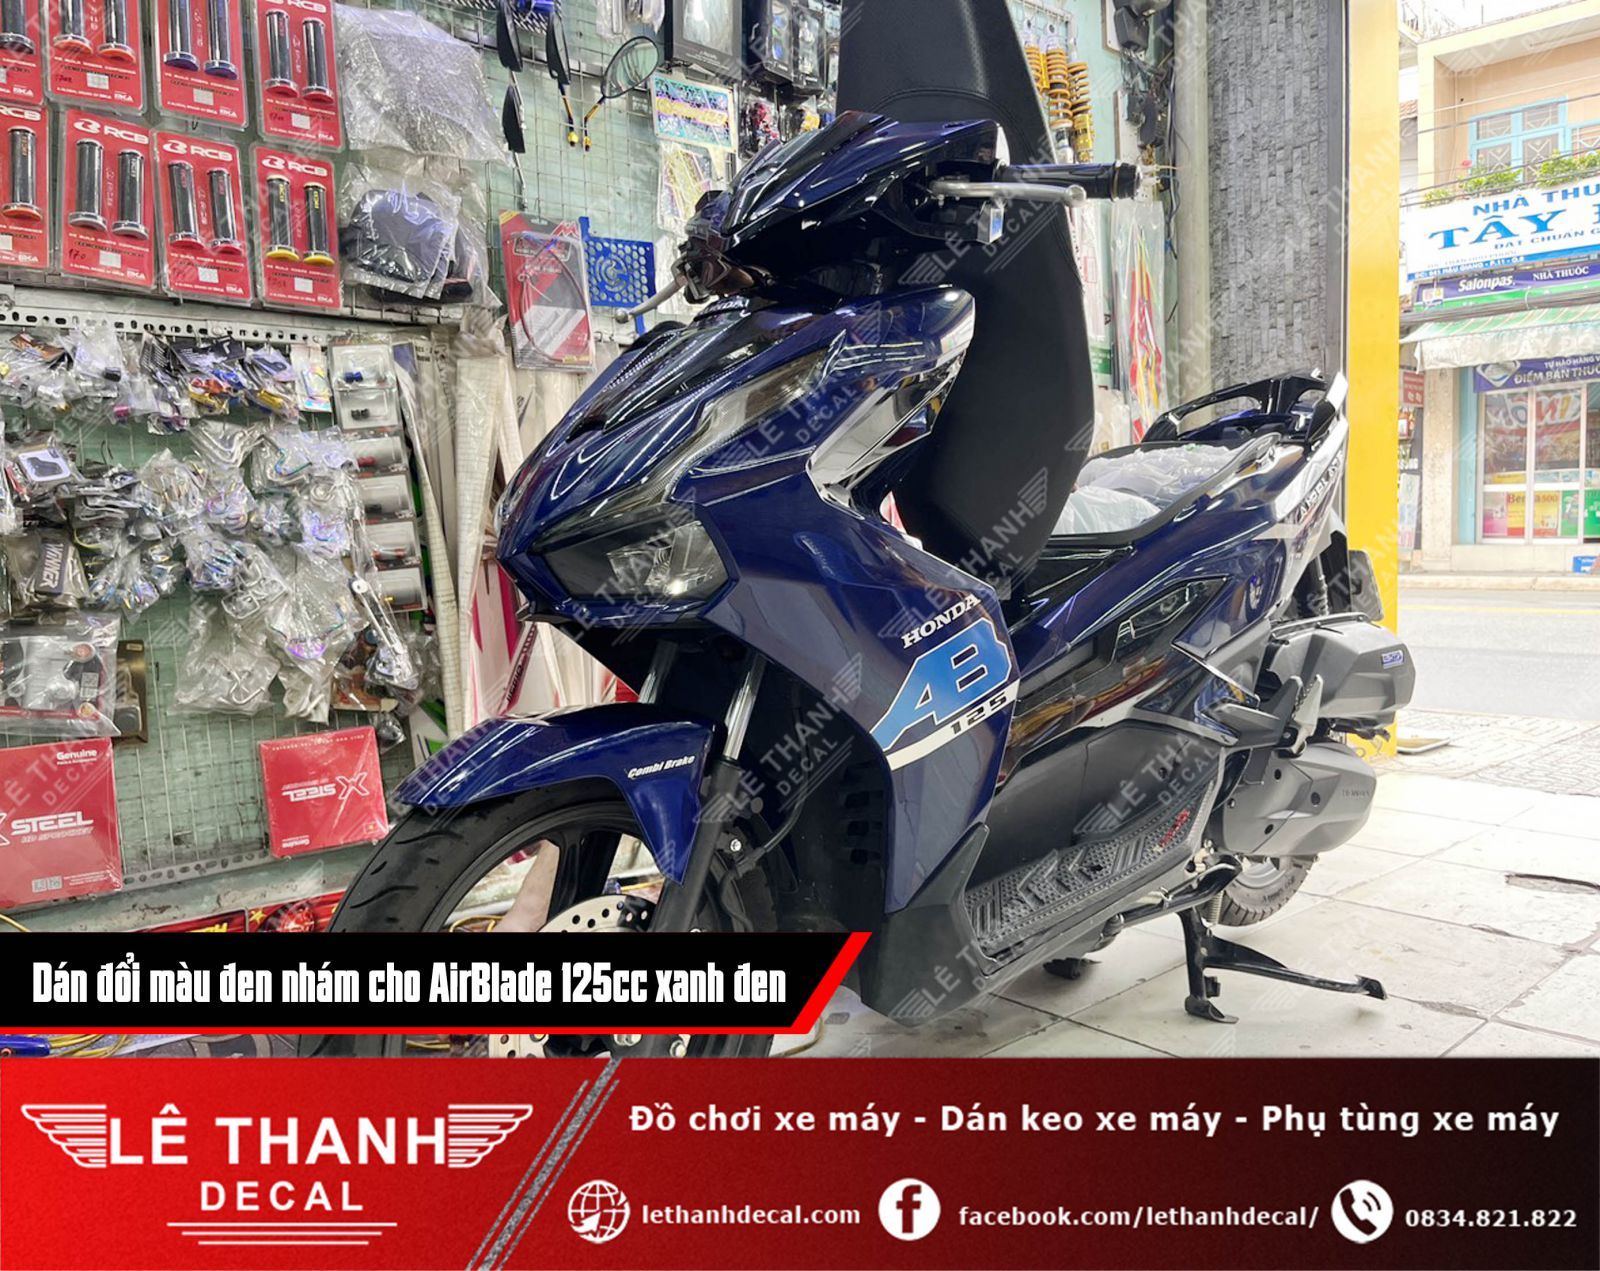 [TOP] 9+ tiệm dán decal xe máy tại đường Hậu Giang, quận 6 uy tín, chất lượng 2023